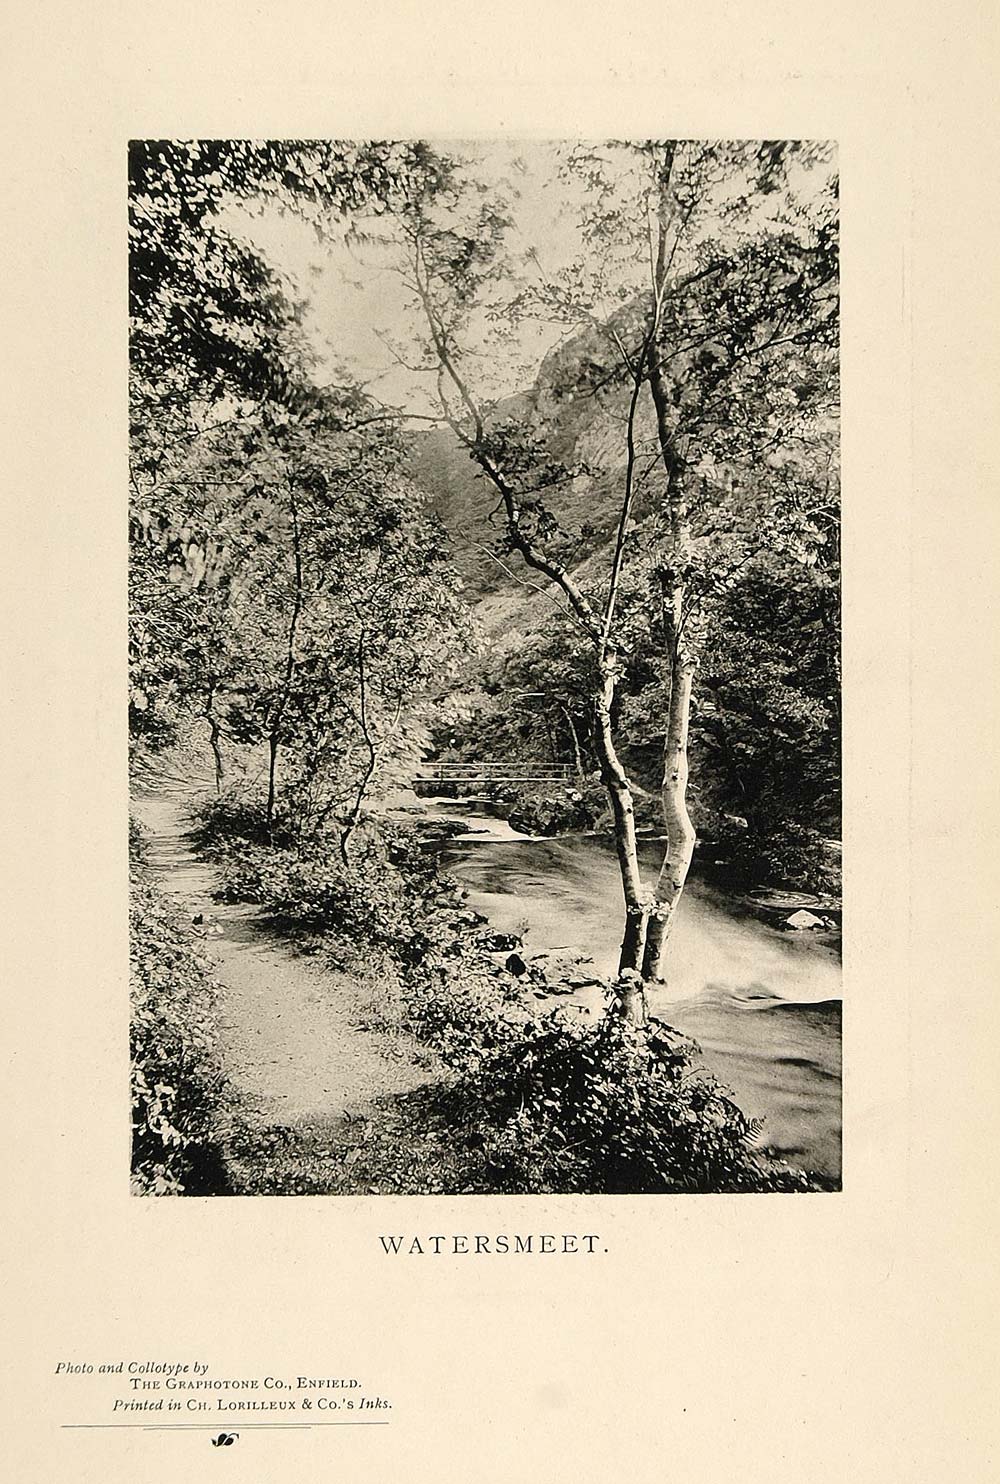 1901 Print Landscape Watersmeet North Devon England - ORIGINAL HISTORIC PNR4